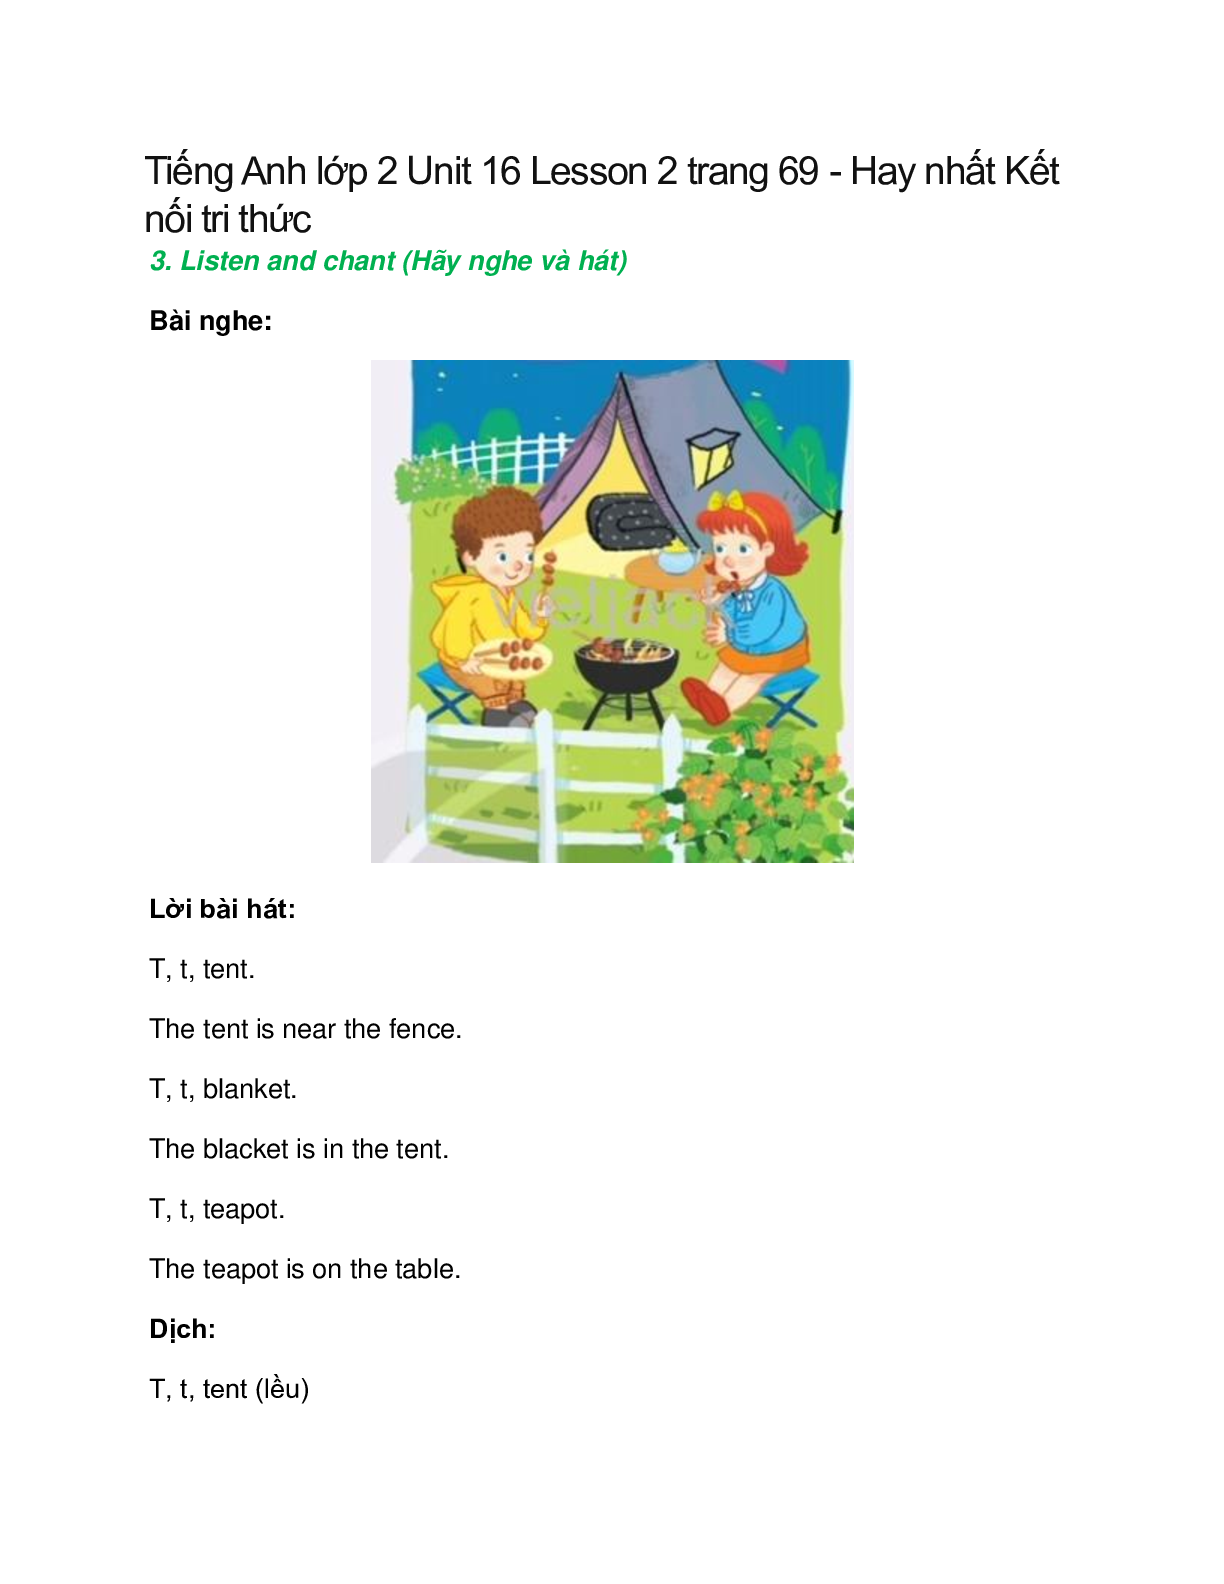 Tiếng Anh lớp 2 Unit 16 Lesson 2 trang 69 – Kết nối tri thức (trang 1)